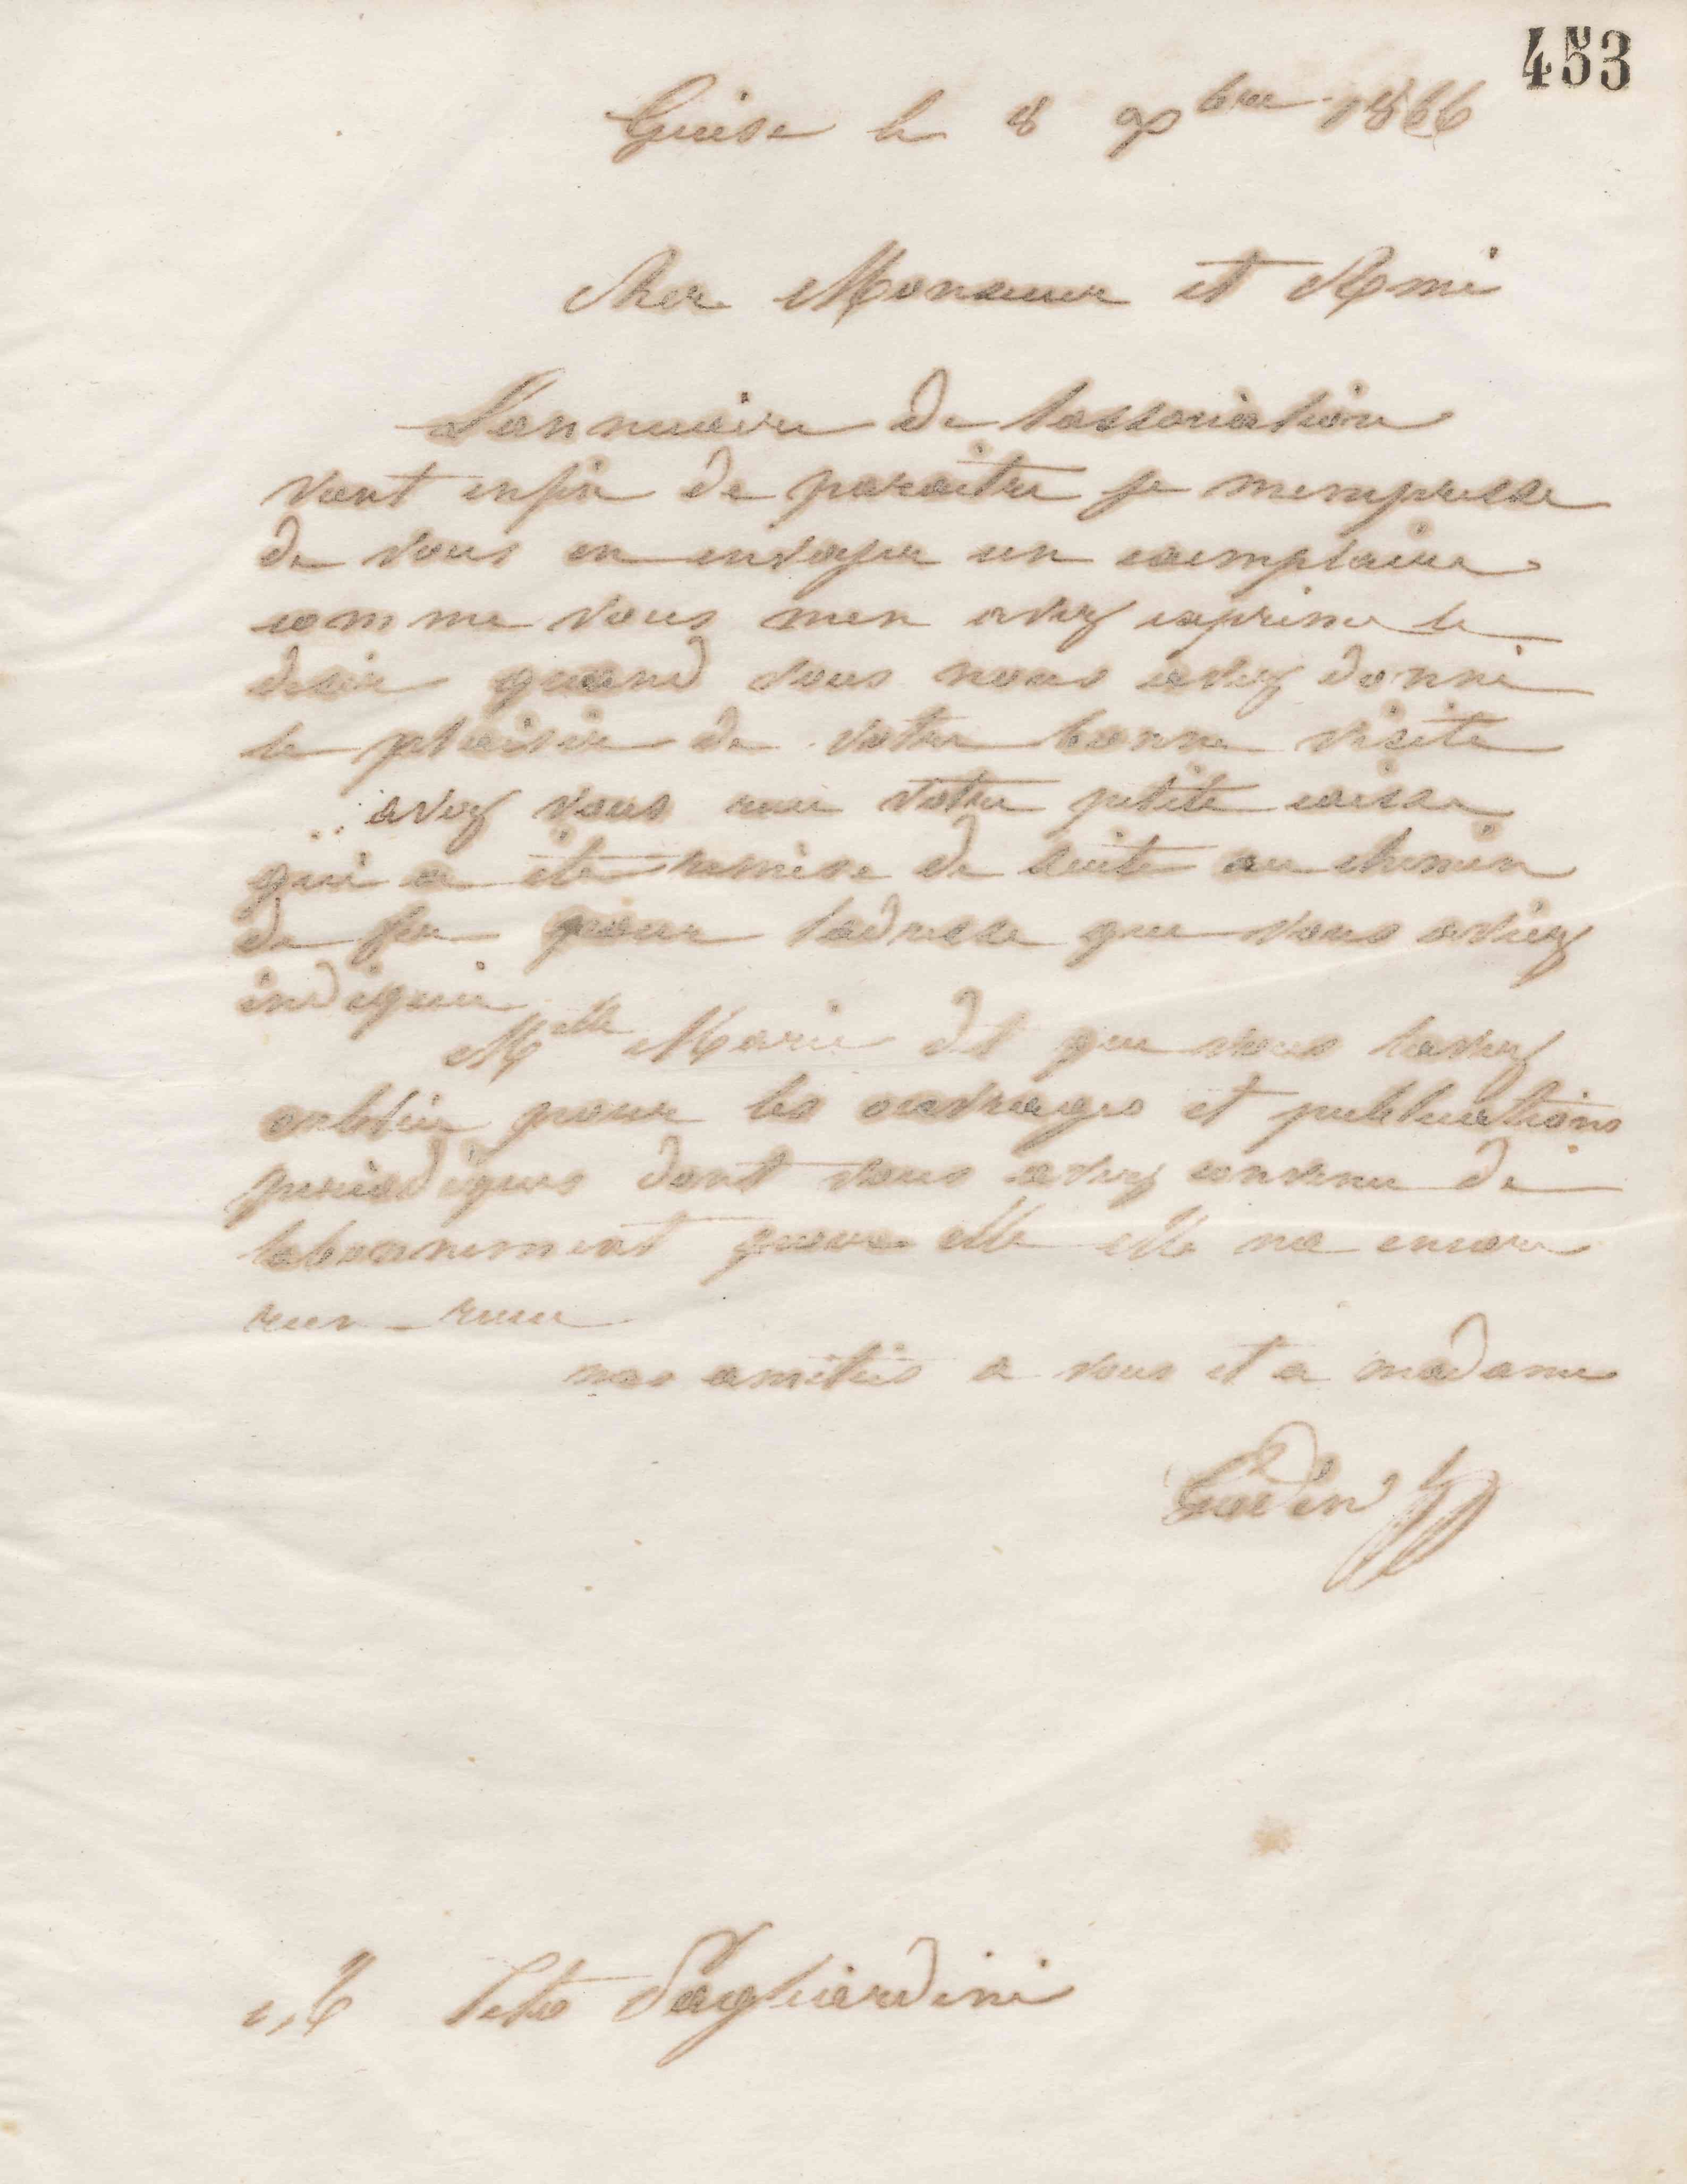 Jean-Baptiste André Godin à Tito Pagliardini, 8 décembre 1866